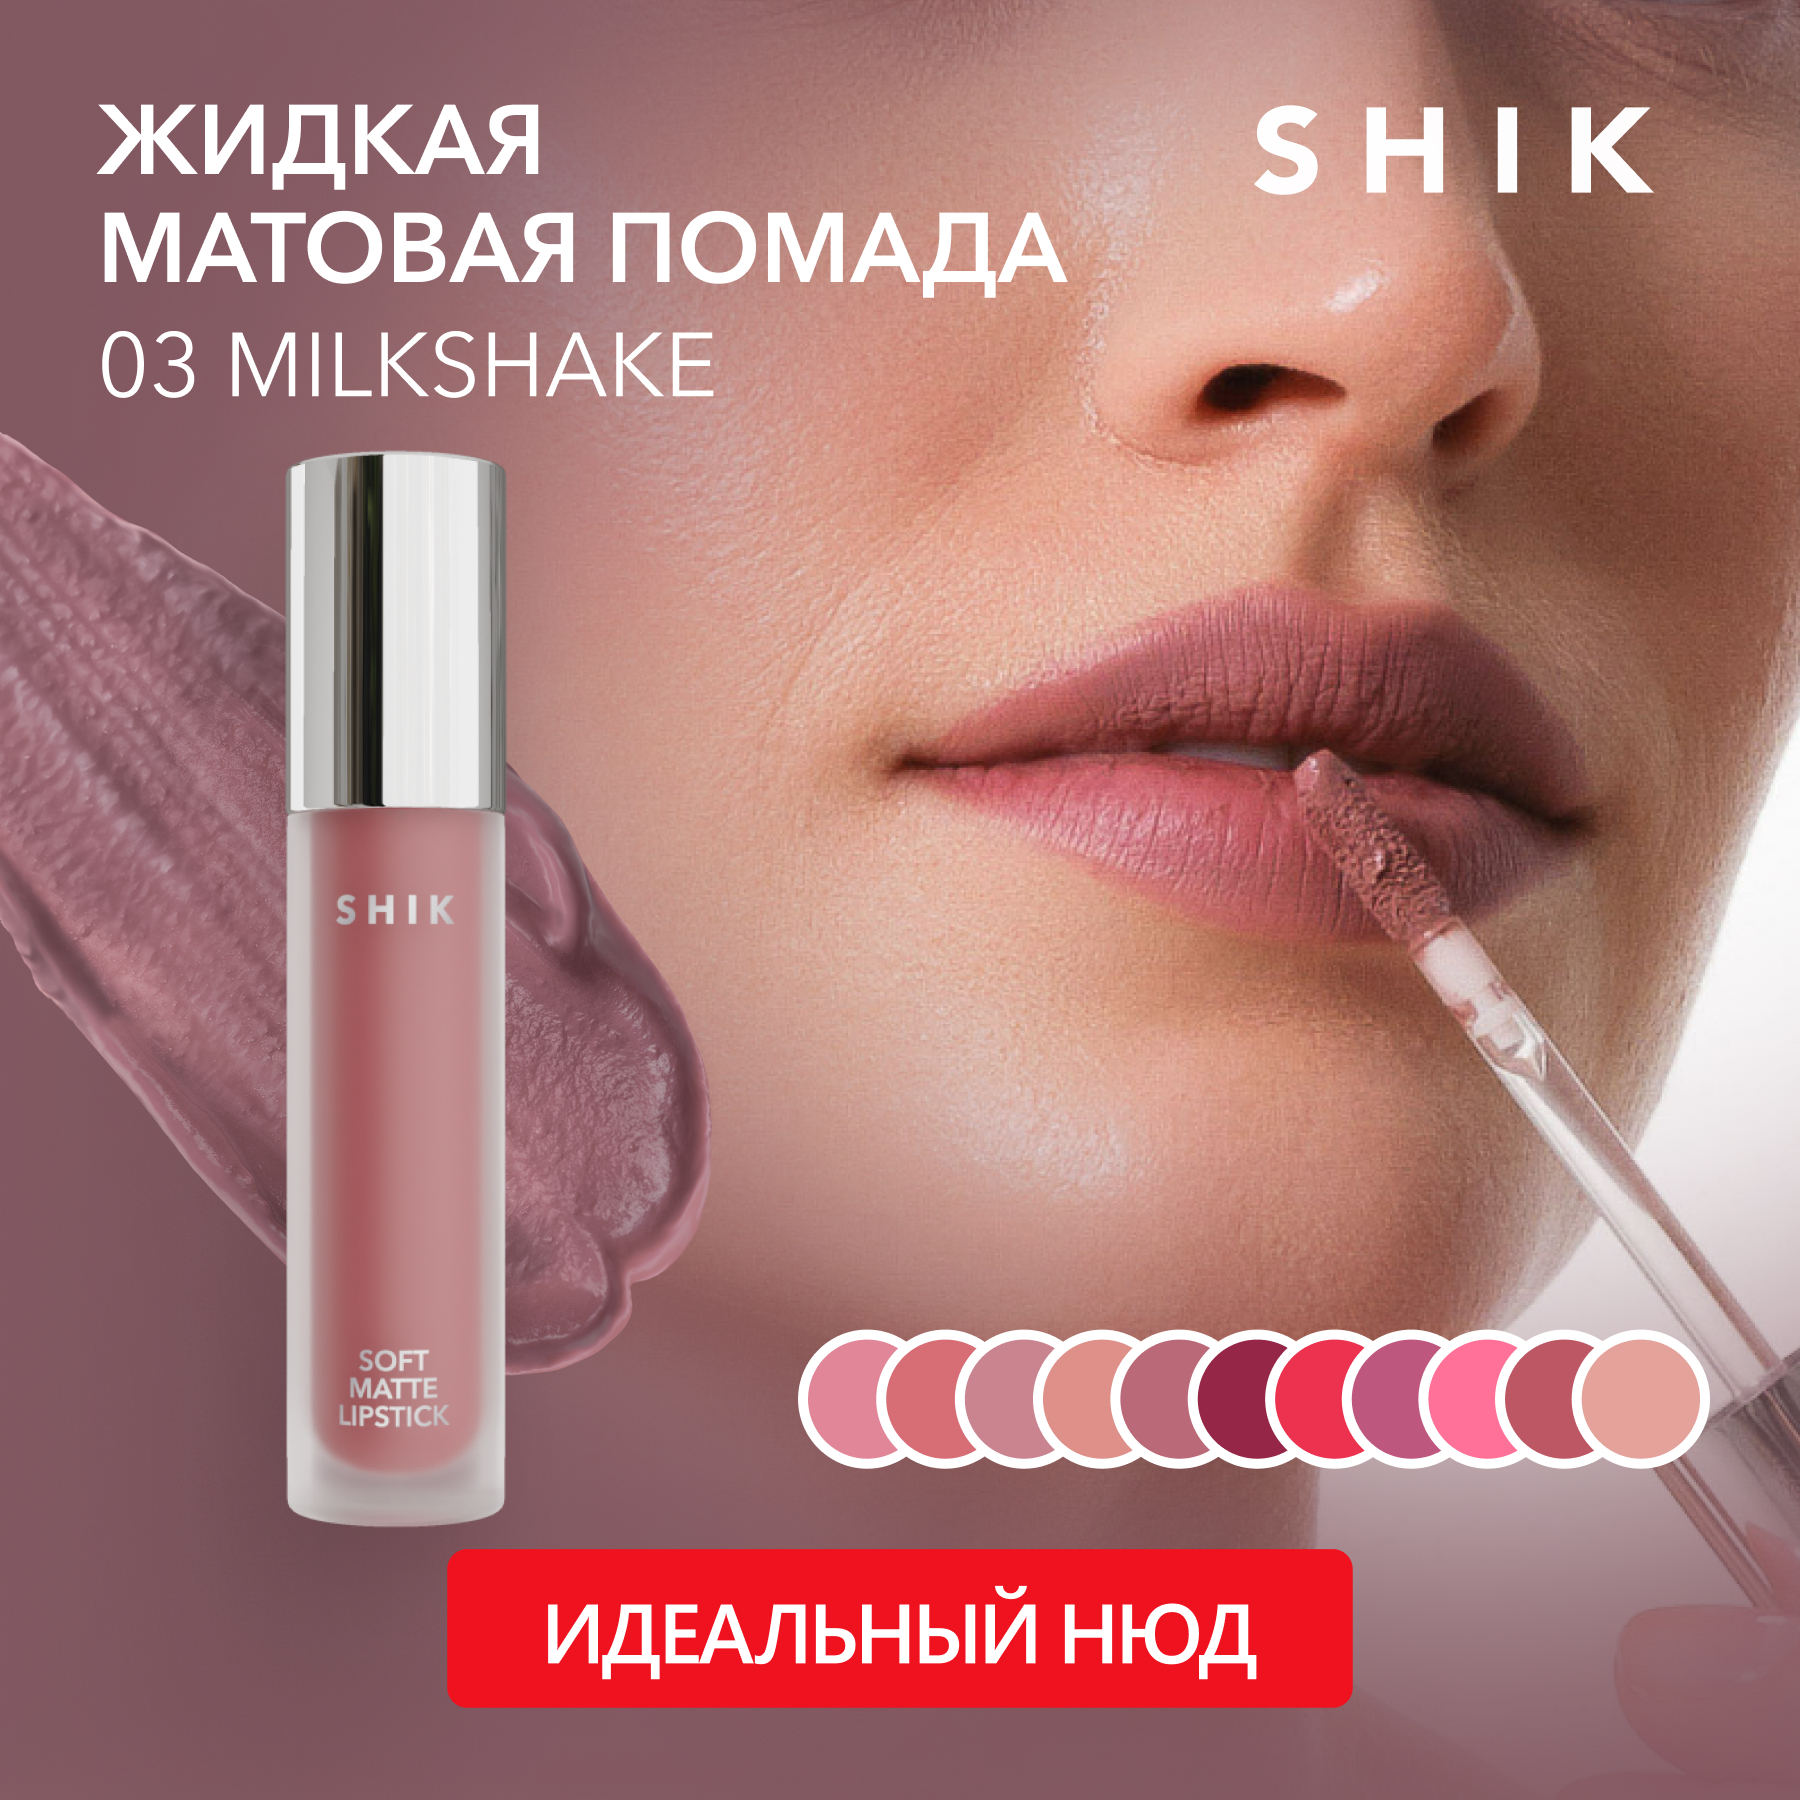 Помада для губ SHIK Soft Matte Lipstick жидкая, матовая тон 03 Milkshake 5 г lollis помада для губ матовая жидкая matte liquid lipstick